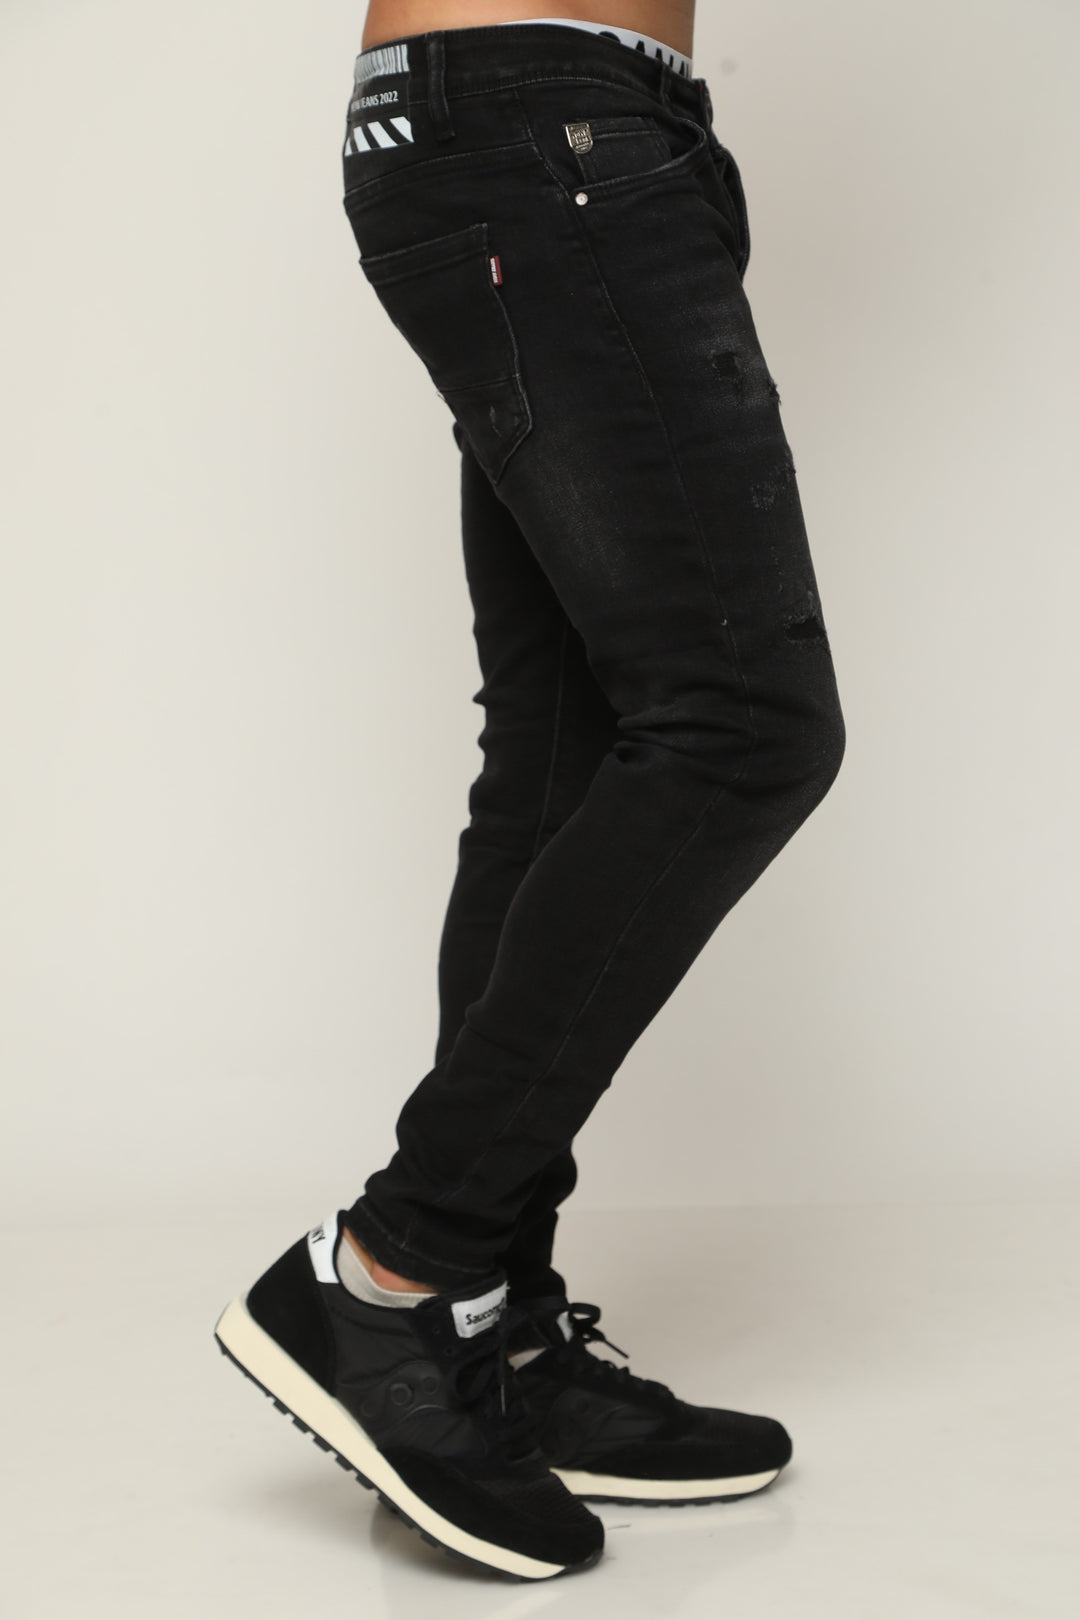 ג'ינס סופר סקיני 830 - canavaro jeans